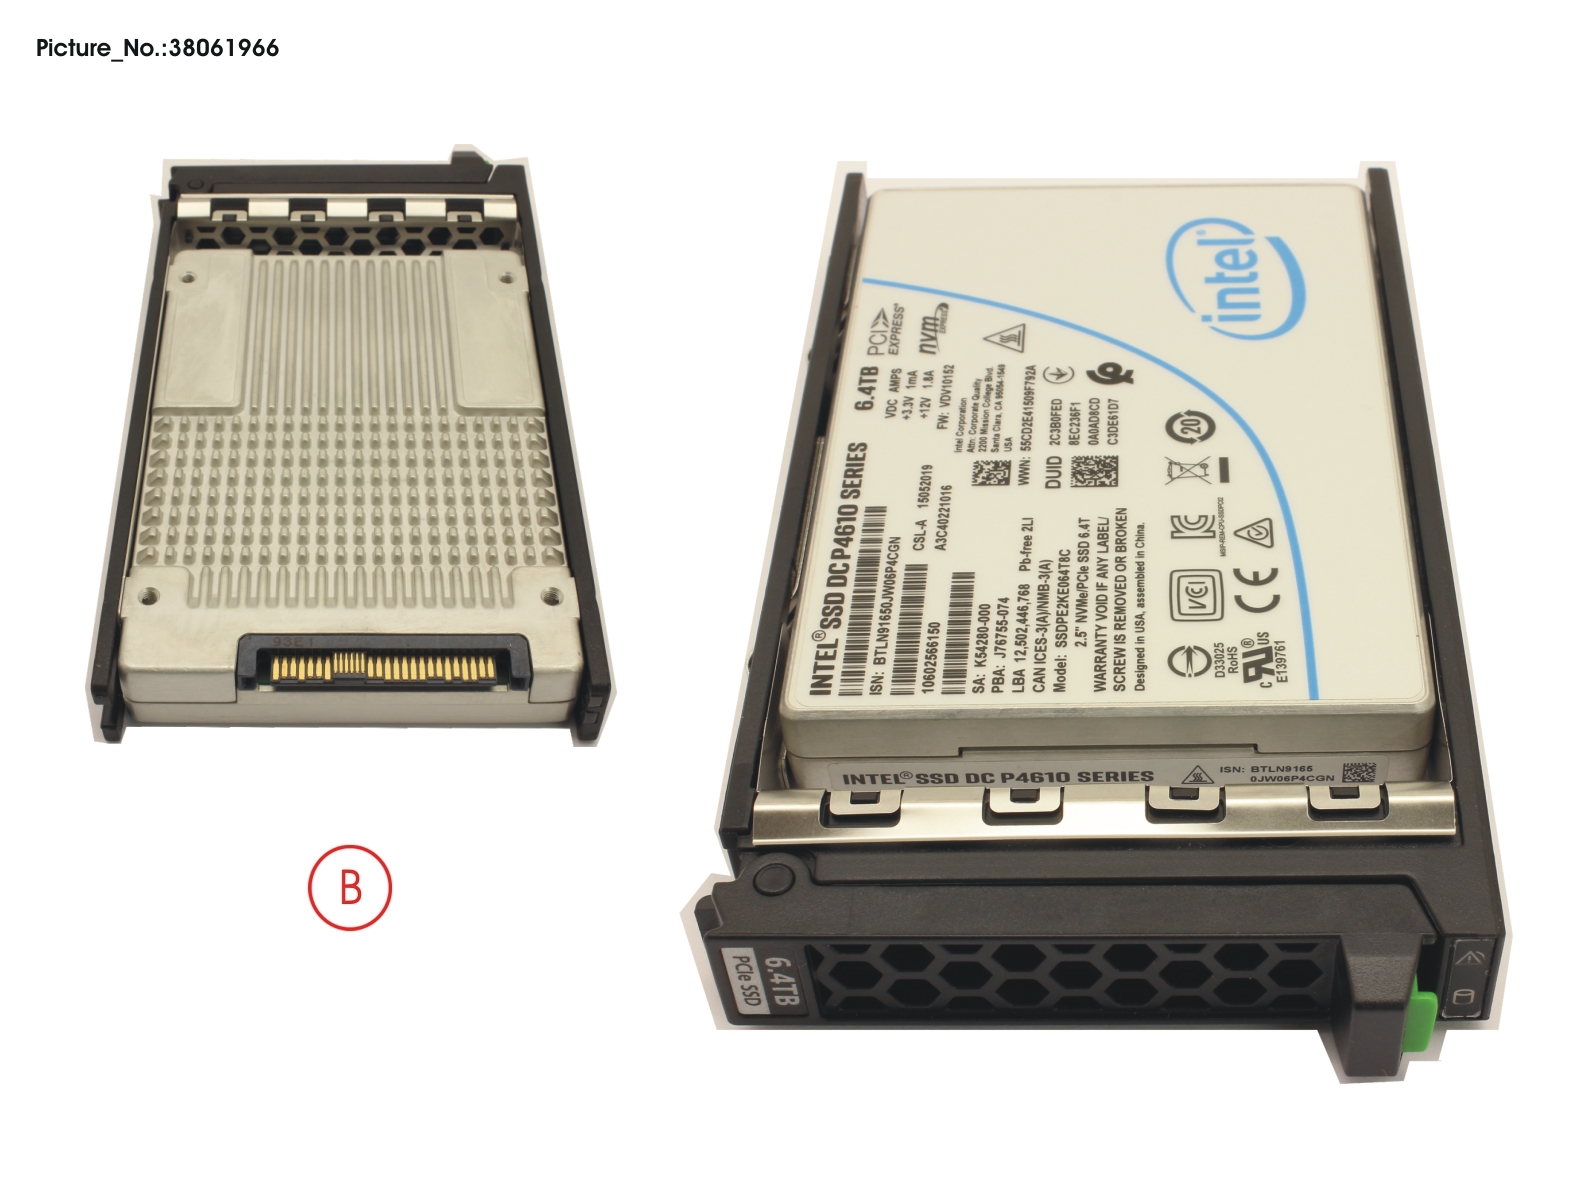 FUJITSU SSD PCIE3 6.4TB MIXED-USE 2.5" H-P EP